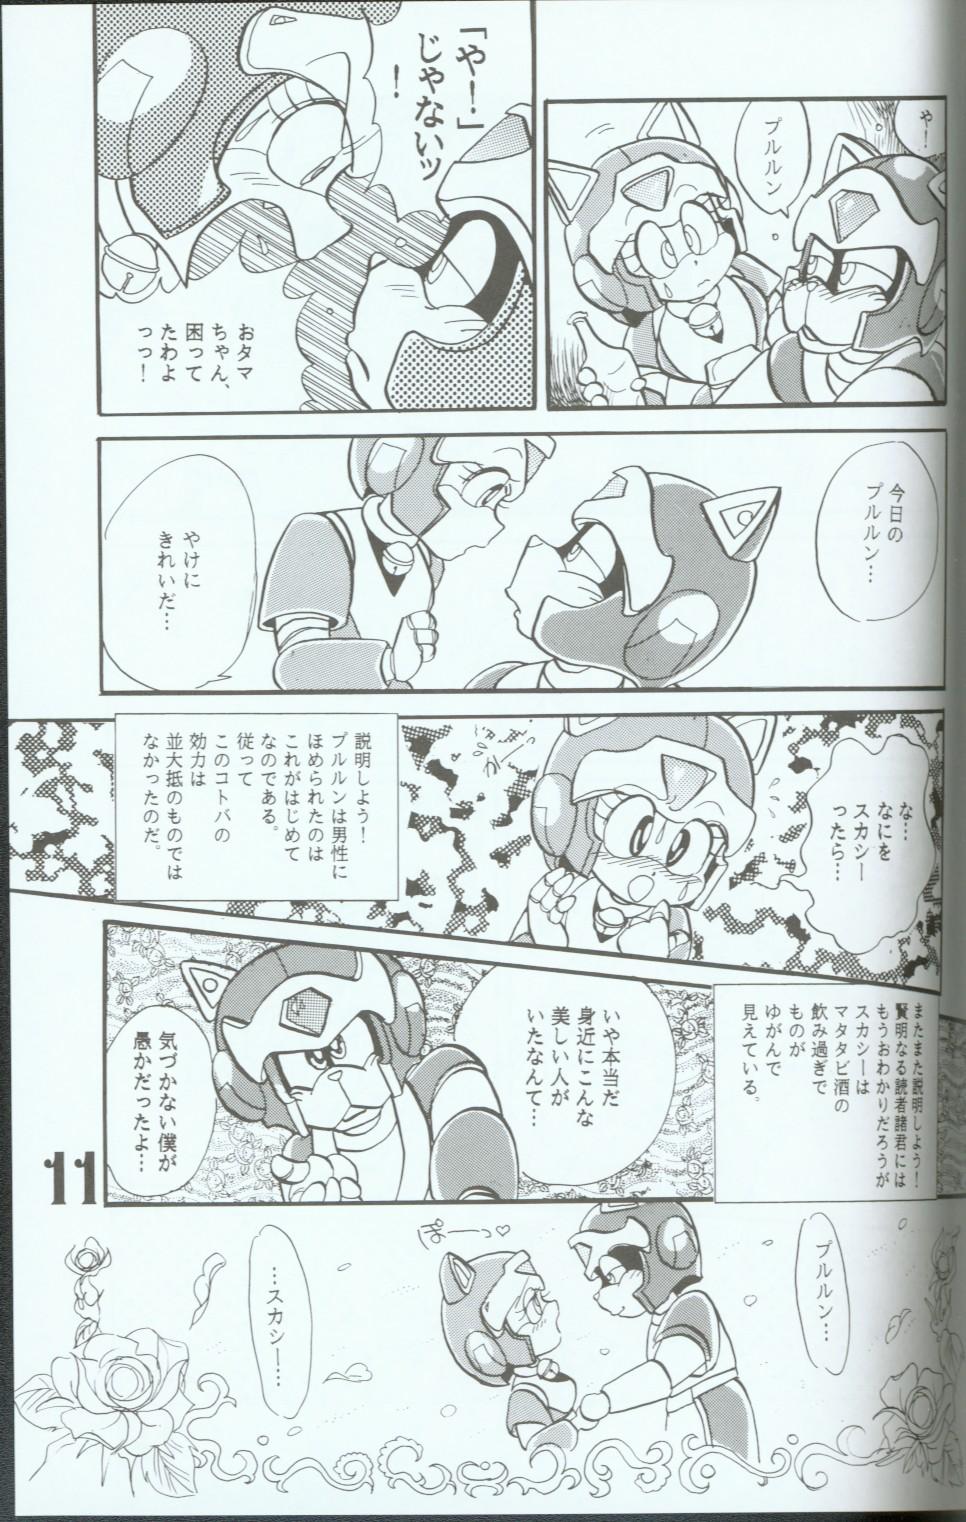 Peludo Yasu Kekuni - Samurai pizza cats Flashing - Page 10